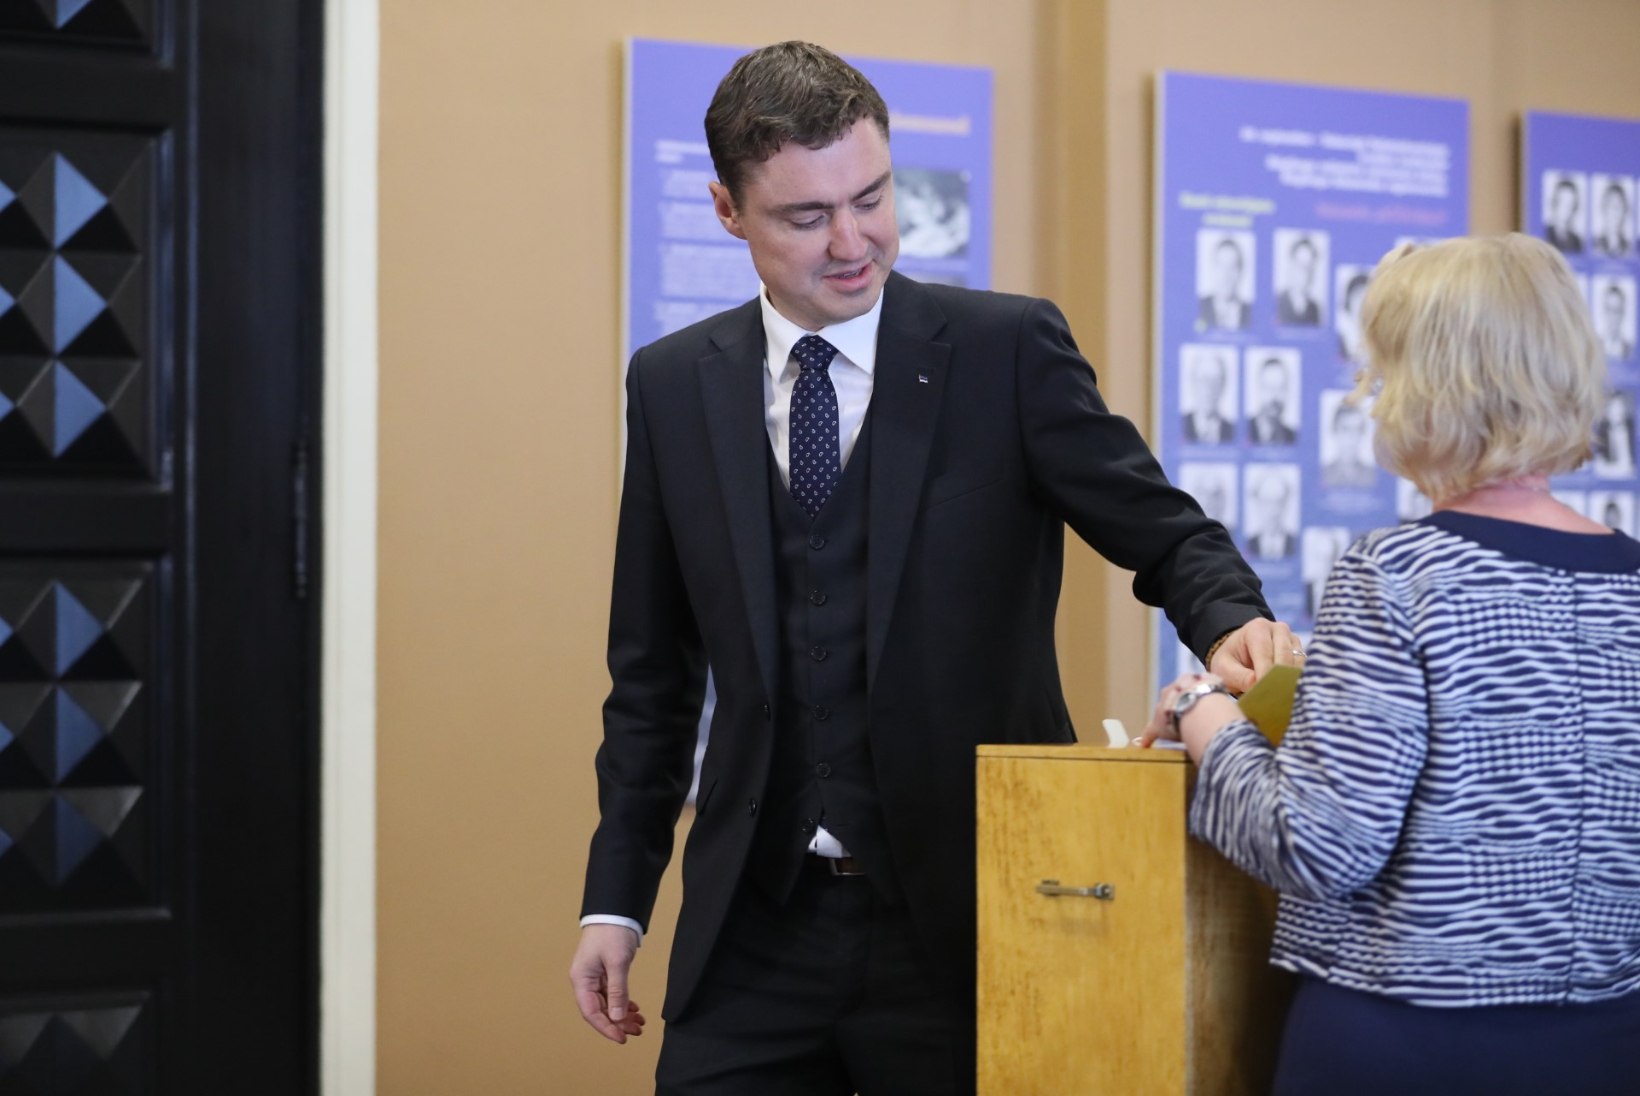 FOTOD | Riigikogu aseesimeesteks valiti Enn Eesmaa ja Hanno Pevkur